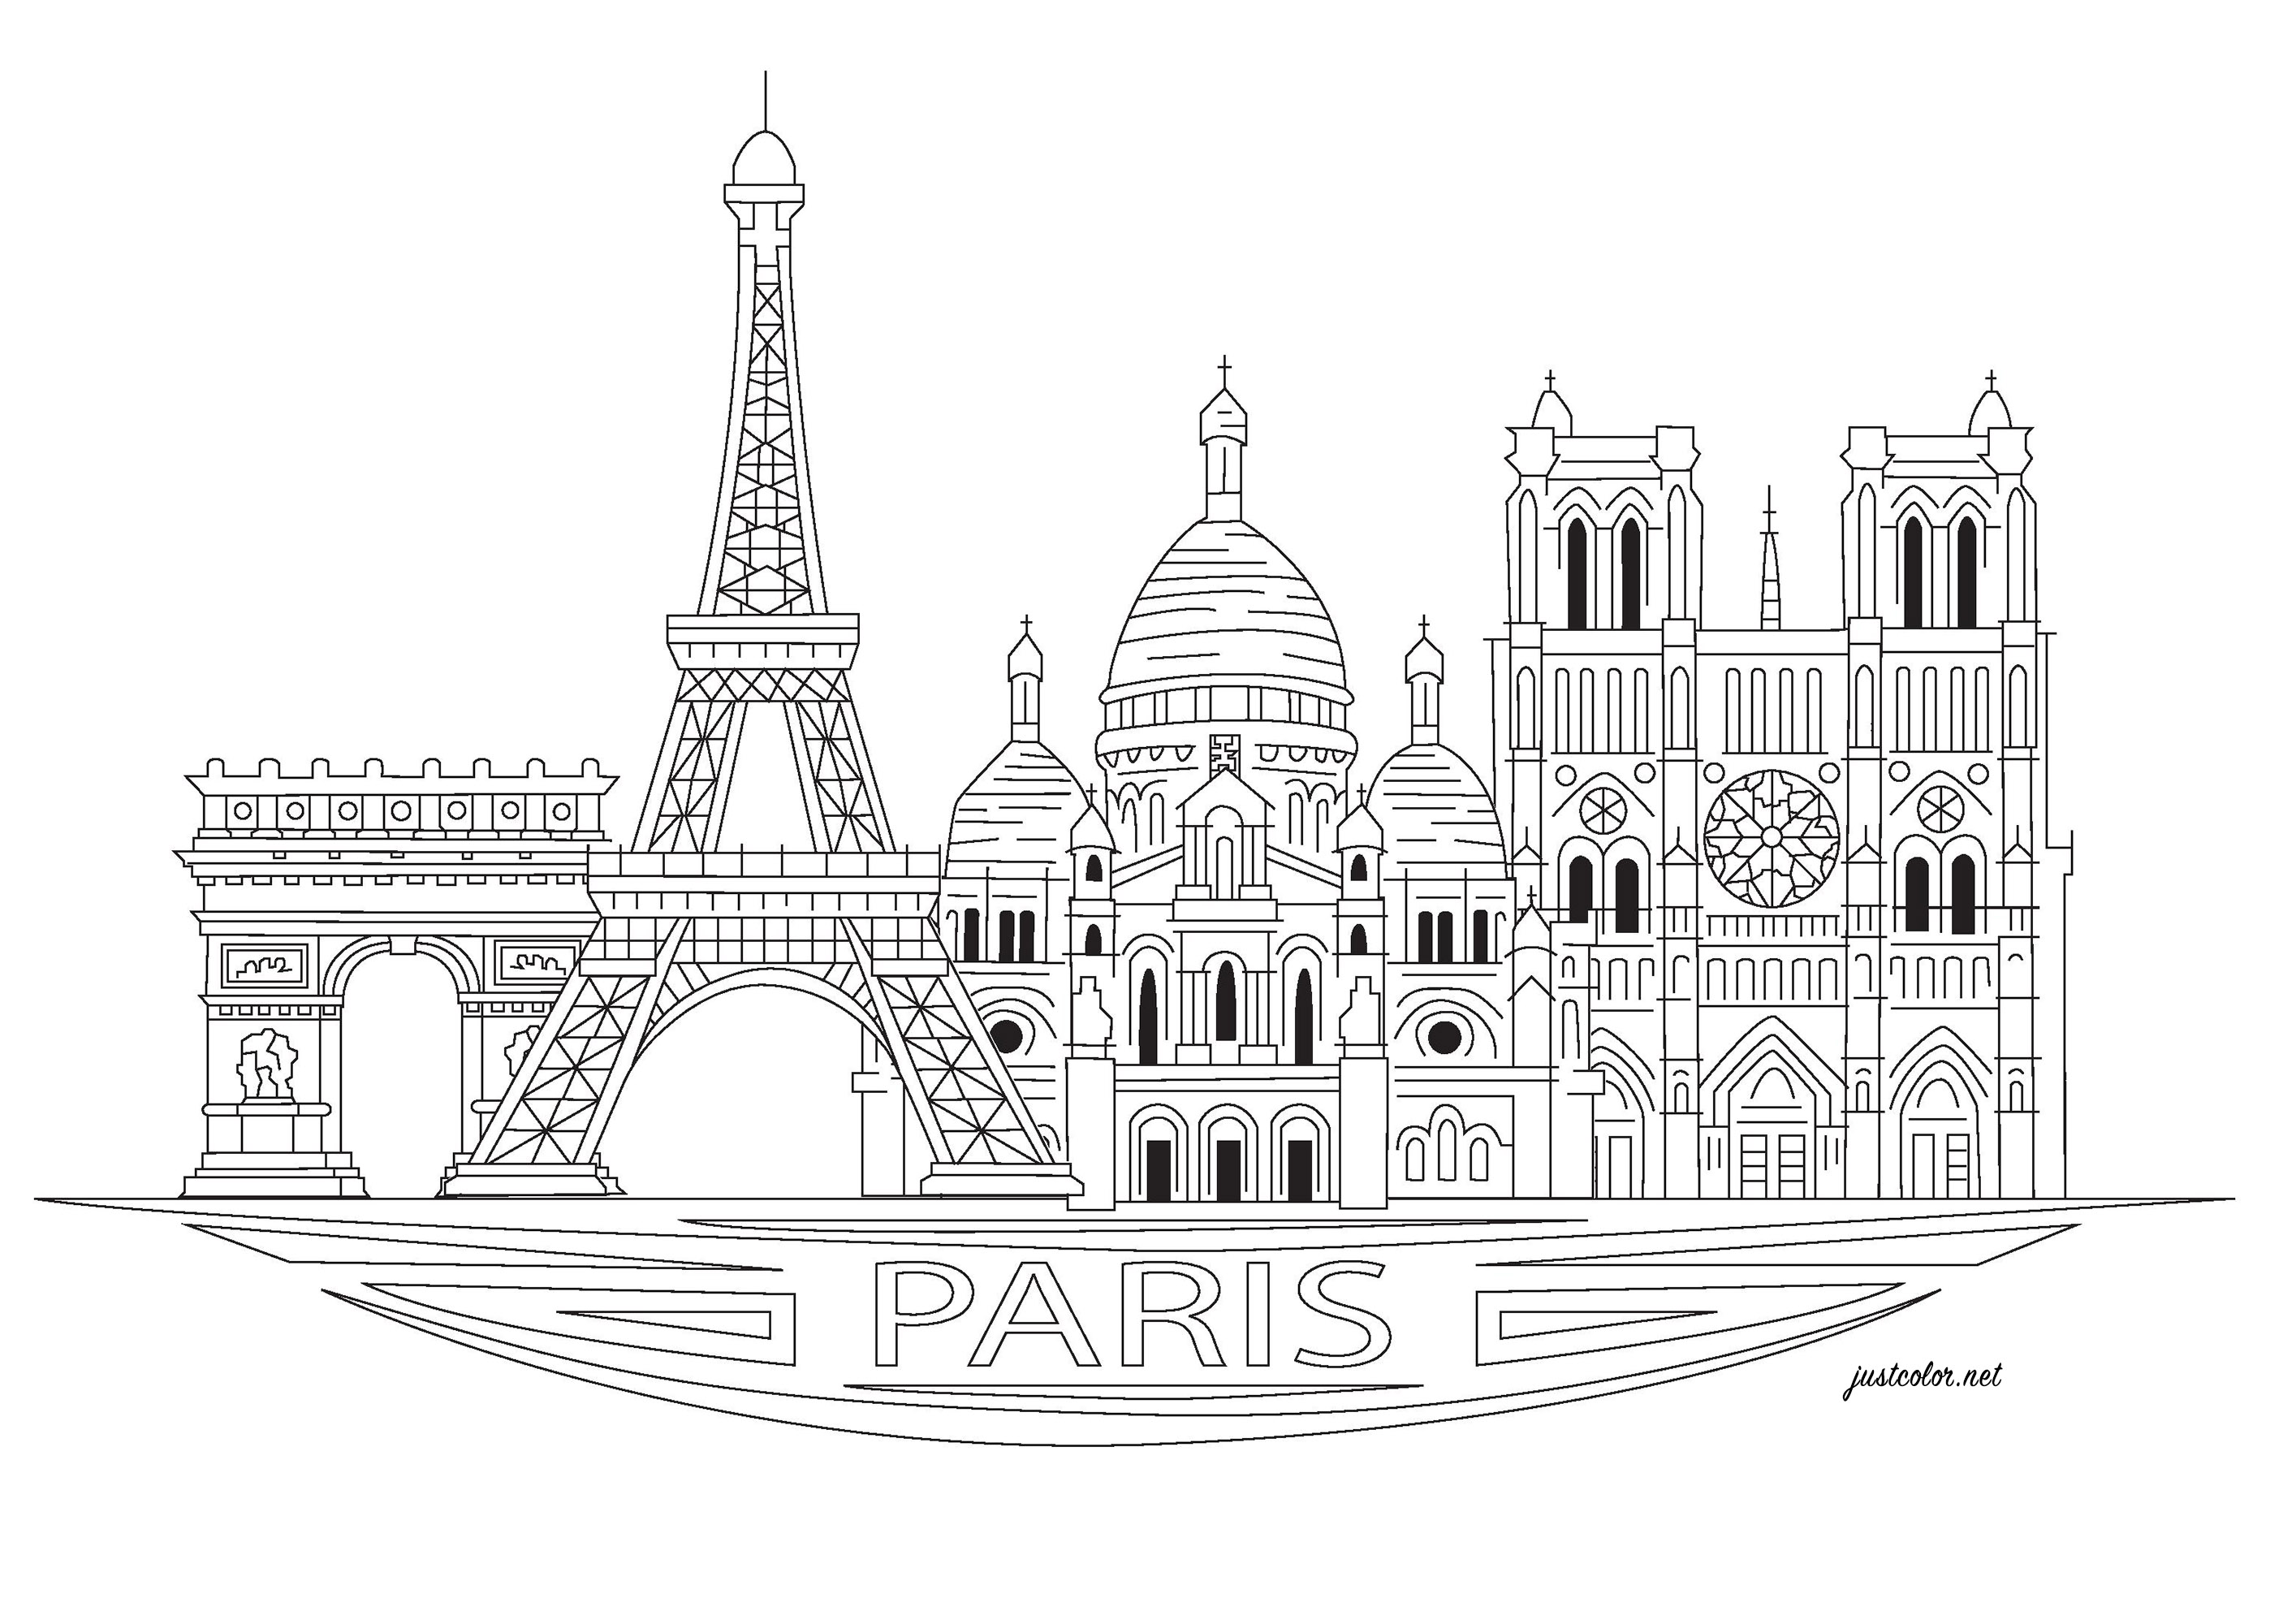 Les principaux monuments de Paris à colorier : Tour Eiffel, Arc de Triomphe, Sacré coeur et Eglise de Notre Dame de Paris